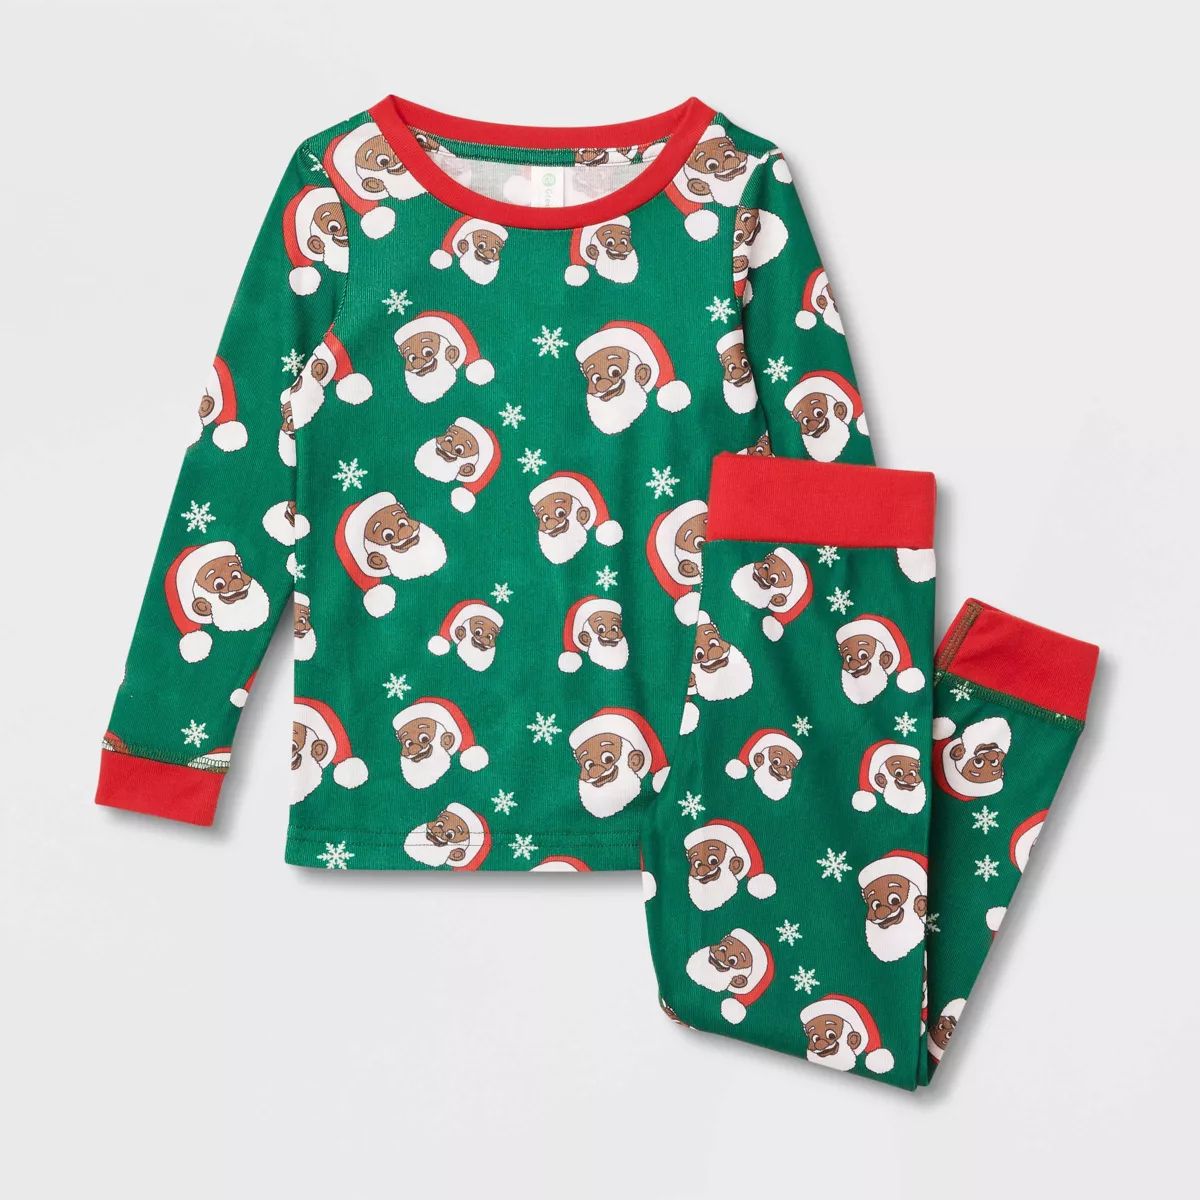 Greentop Gifts Toddler Santa Print Matching Family Pajama - Green | Target